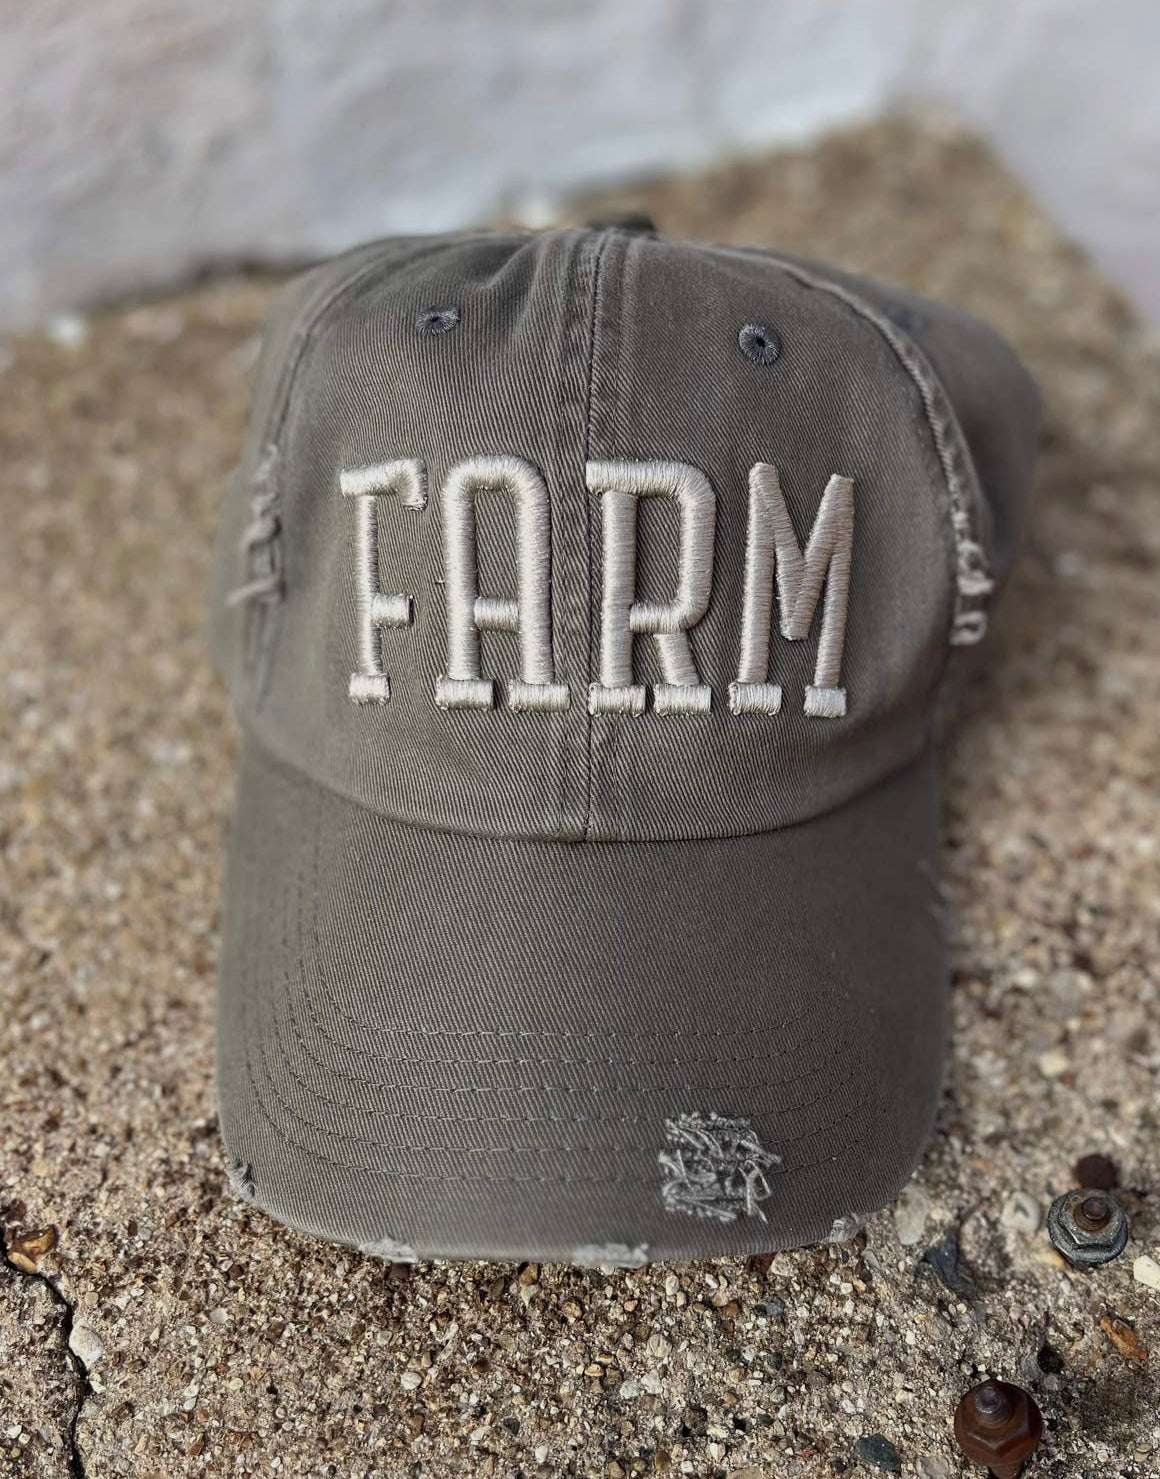 Farm Hat